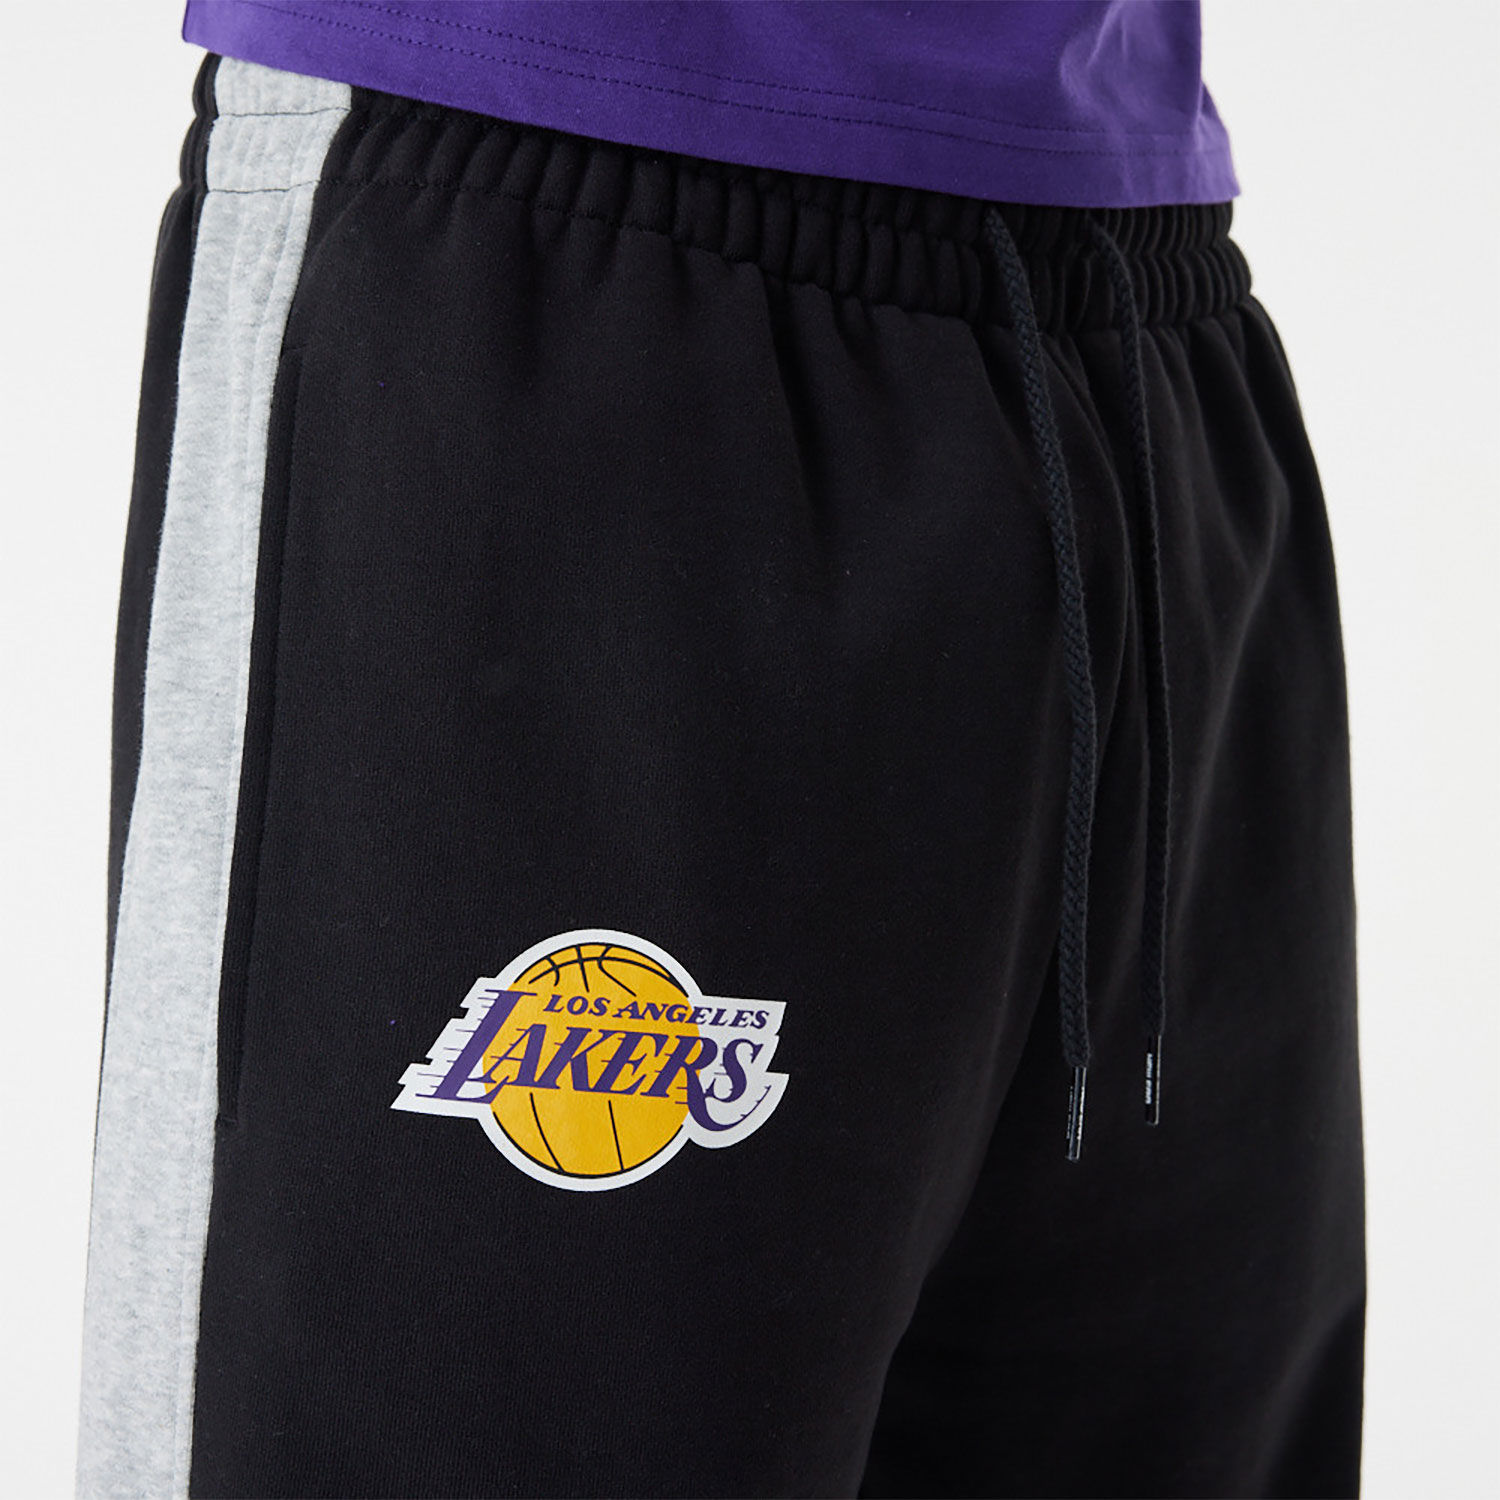 LA Lakers NBA Large Graphic Black Joggers